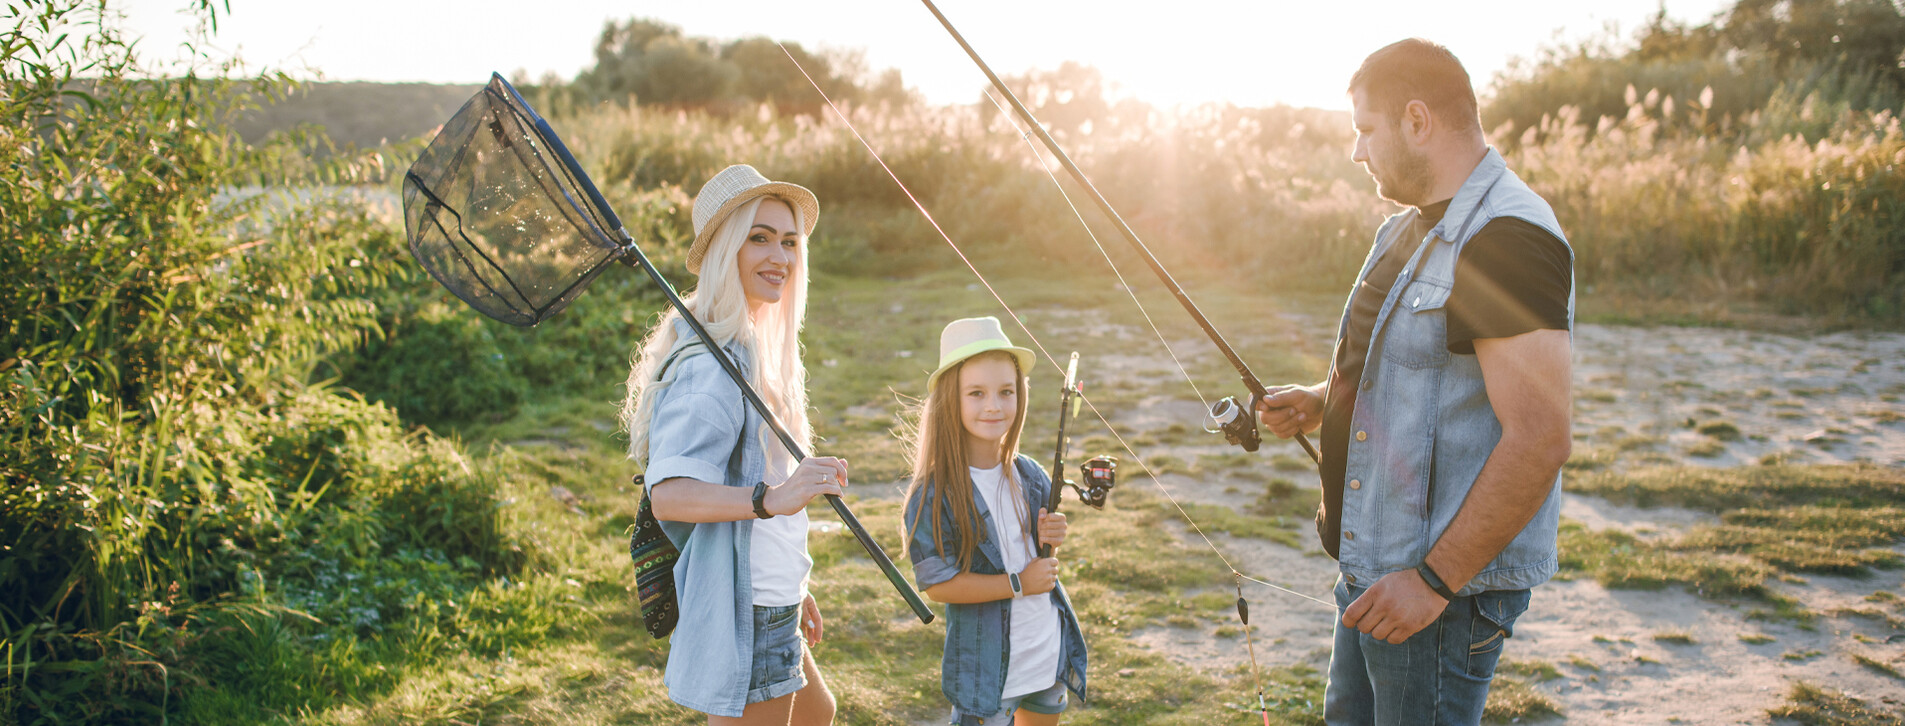 Фото 1 - Семейный уикенд с рыбалкой в «Дельте Днепра»